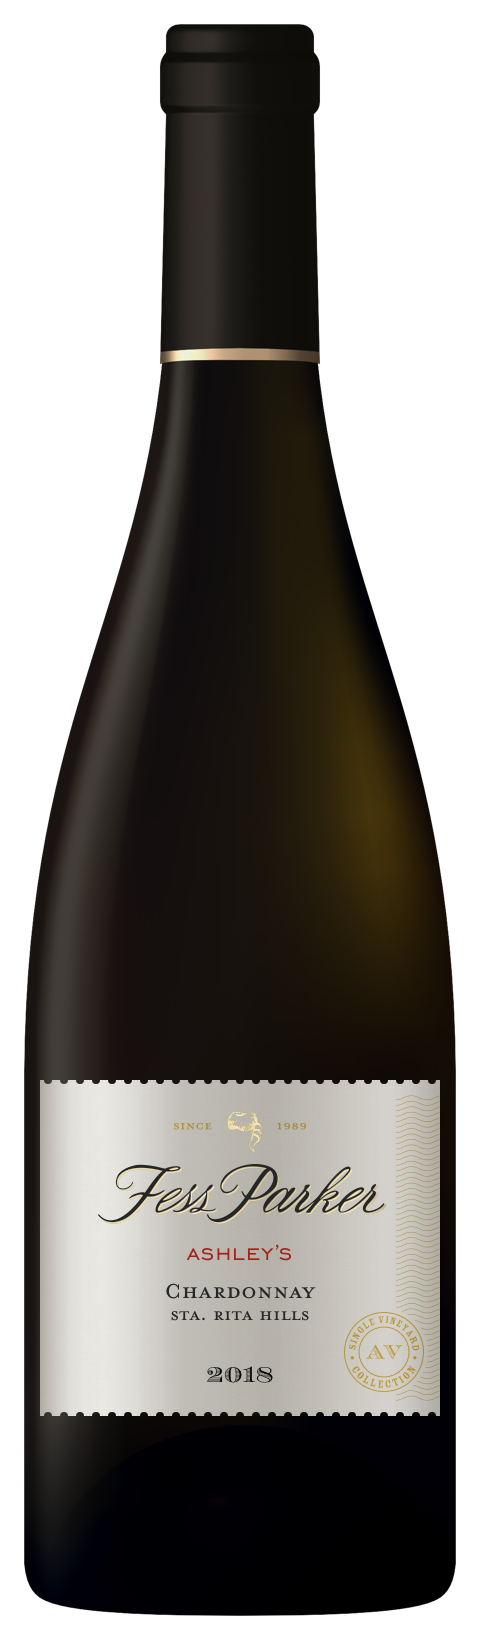 Bottle shot of Ashley's Chardonnay